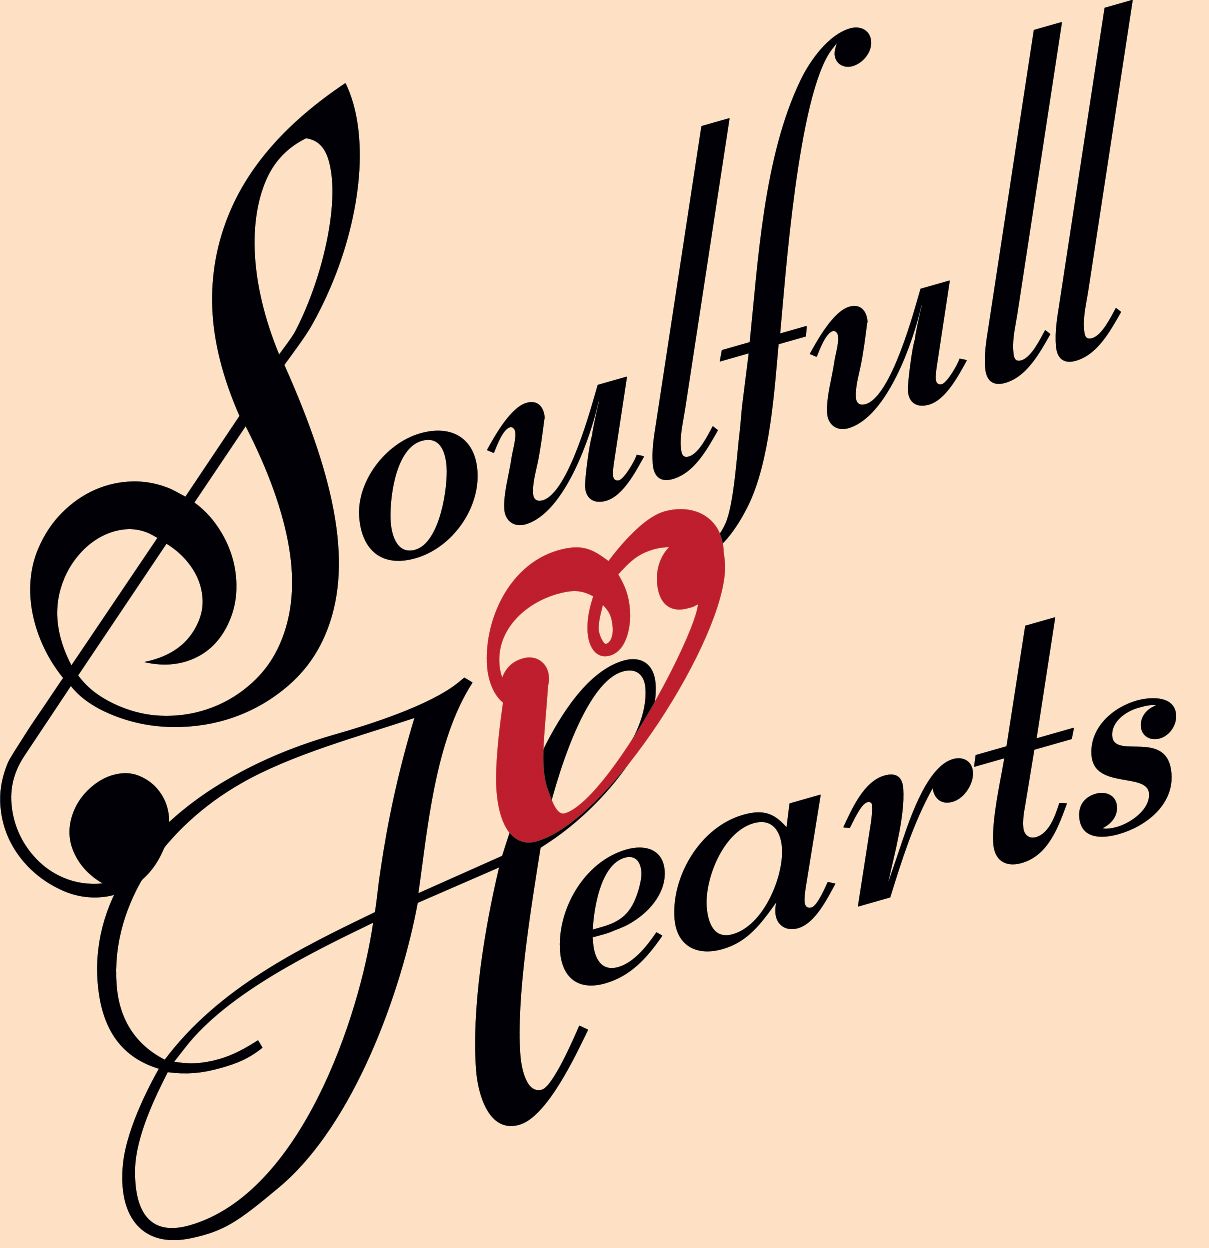 Soulfull Hearts Logo